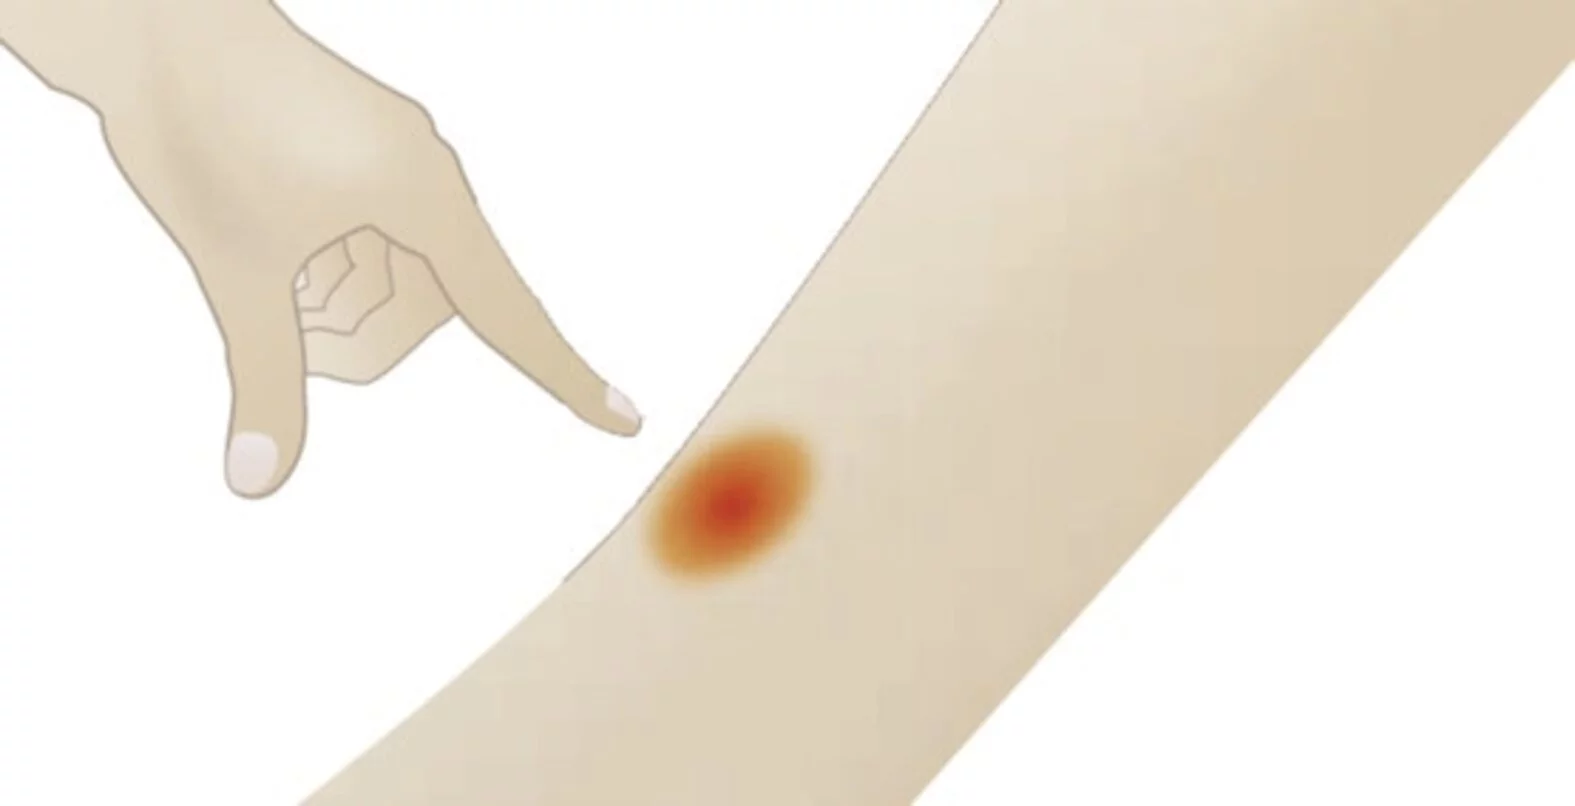 Zeichnung: Finger drückte auf Bein mit rotem Punkt